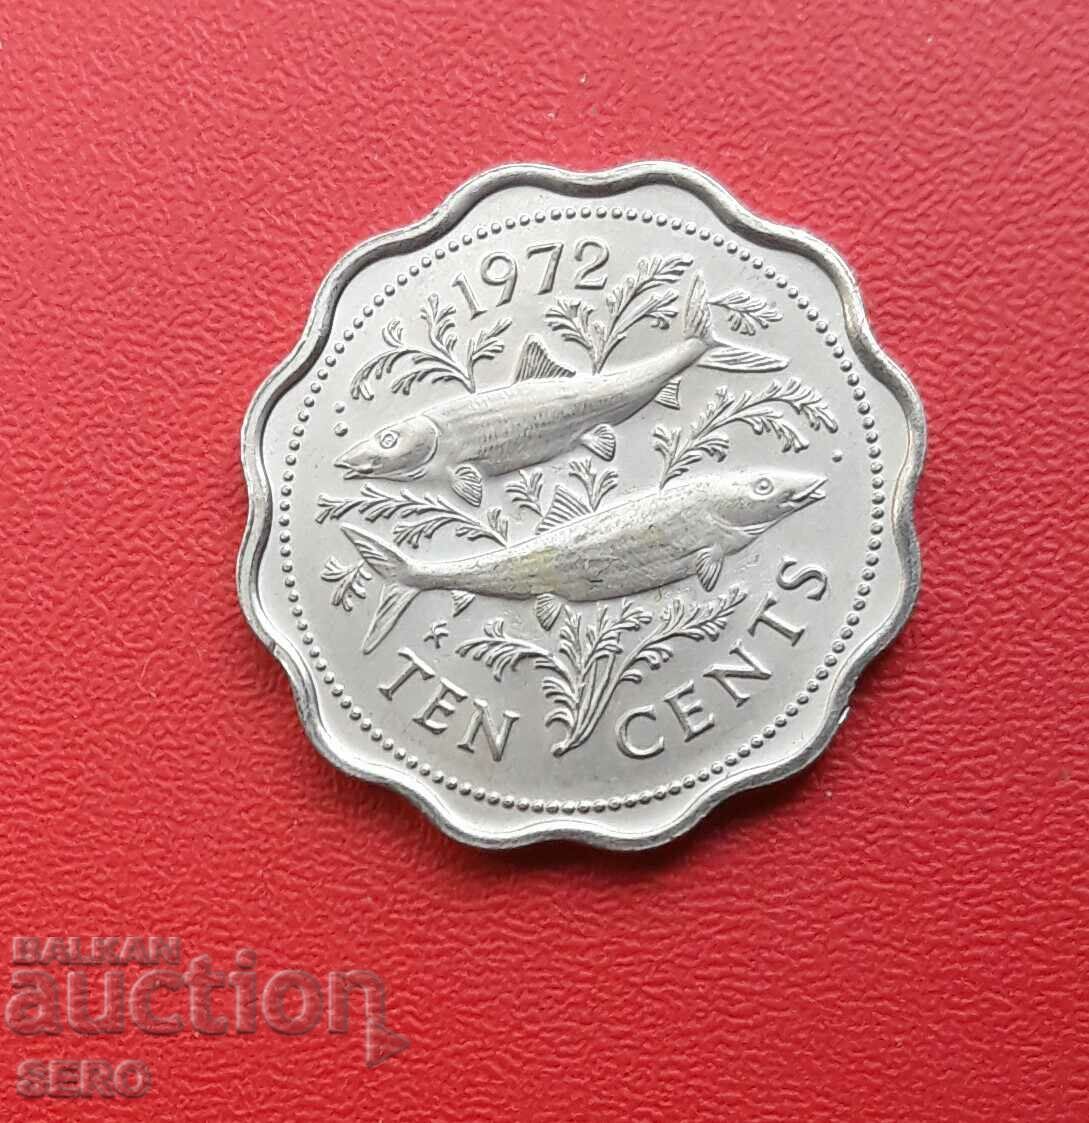 Bahamas-10 cents 1972-very rare